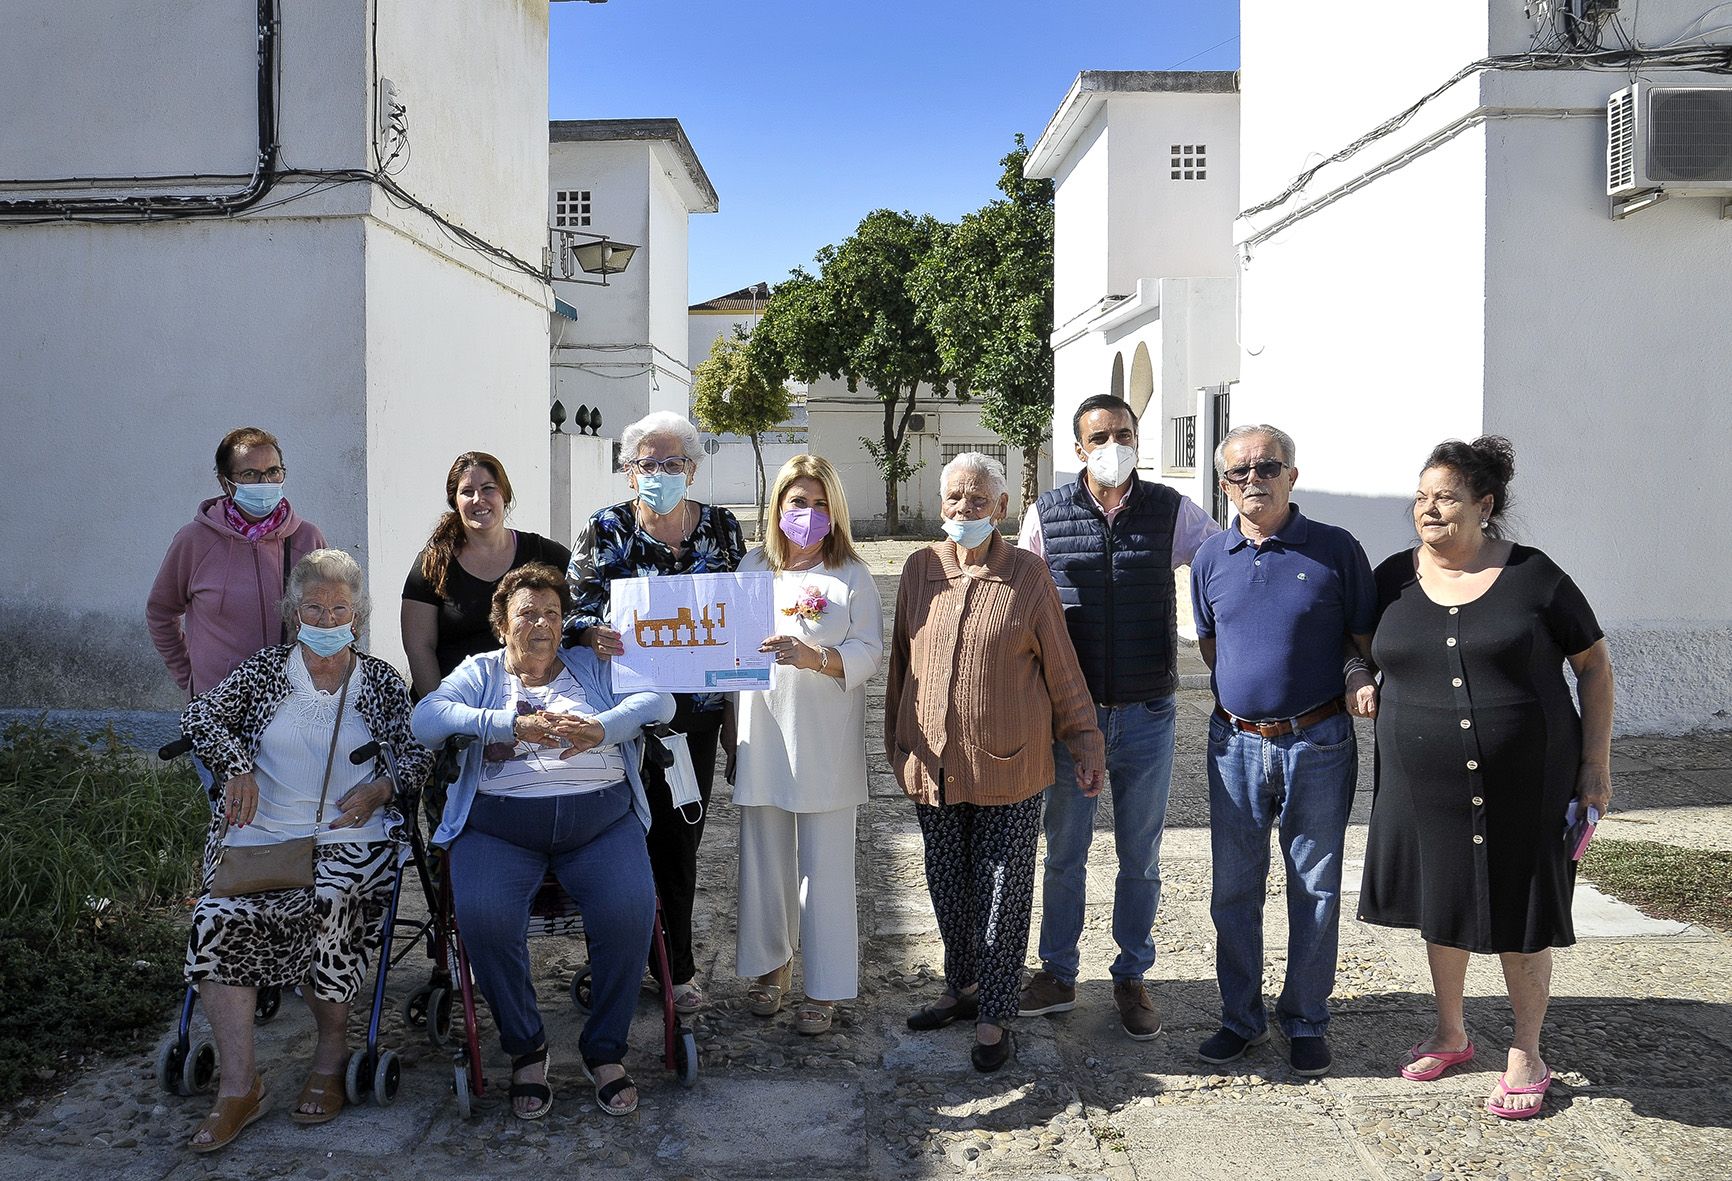 Las 'casitas bajas' de Jerez se preparan para una gran remodelación. La alcaldesa presentó el proyecto a los vecinos en la pandemia.